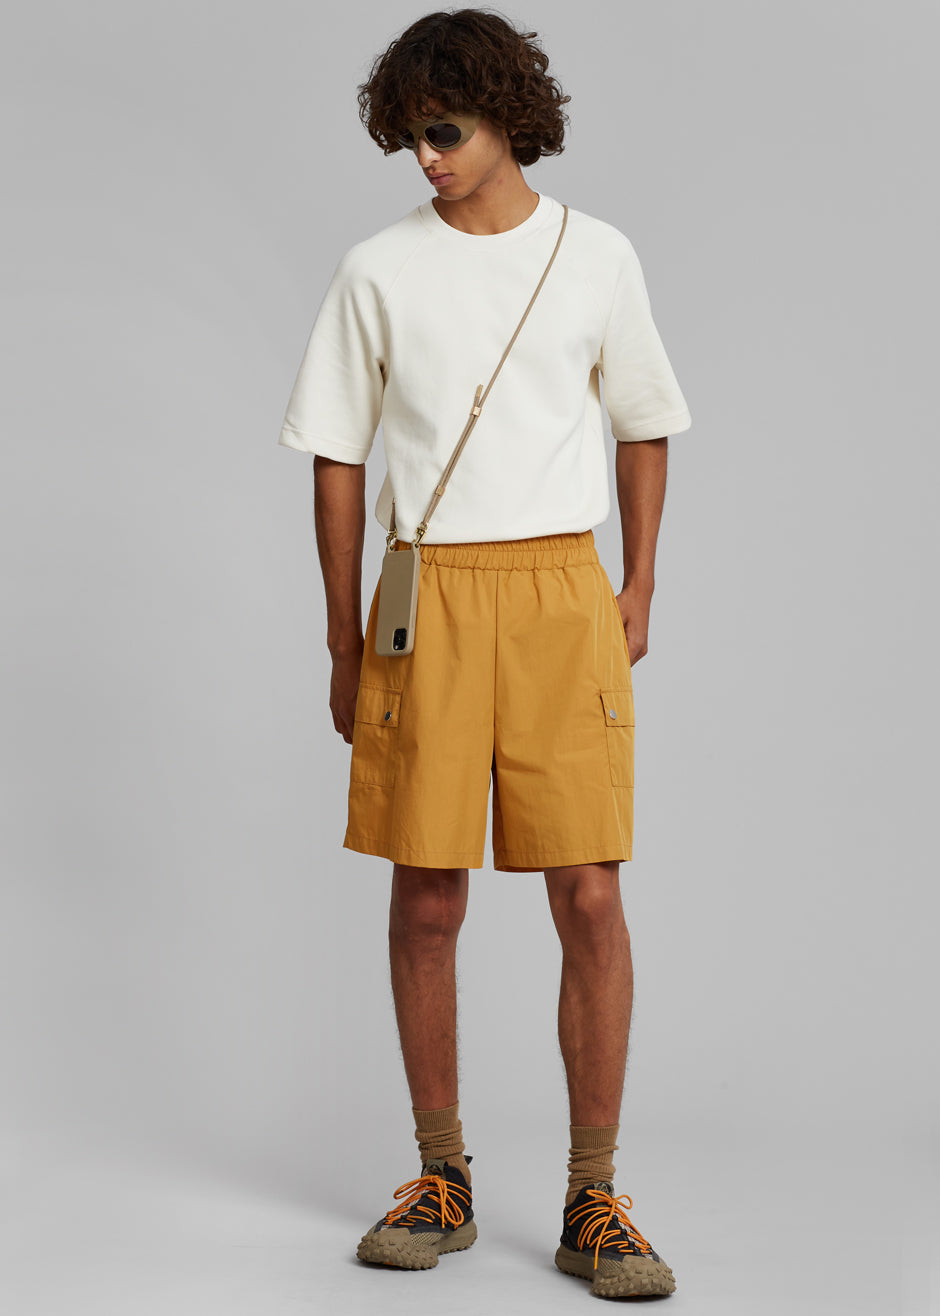 Spence Shorts - Orange - 2